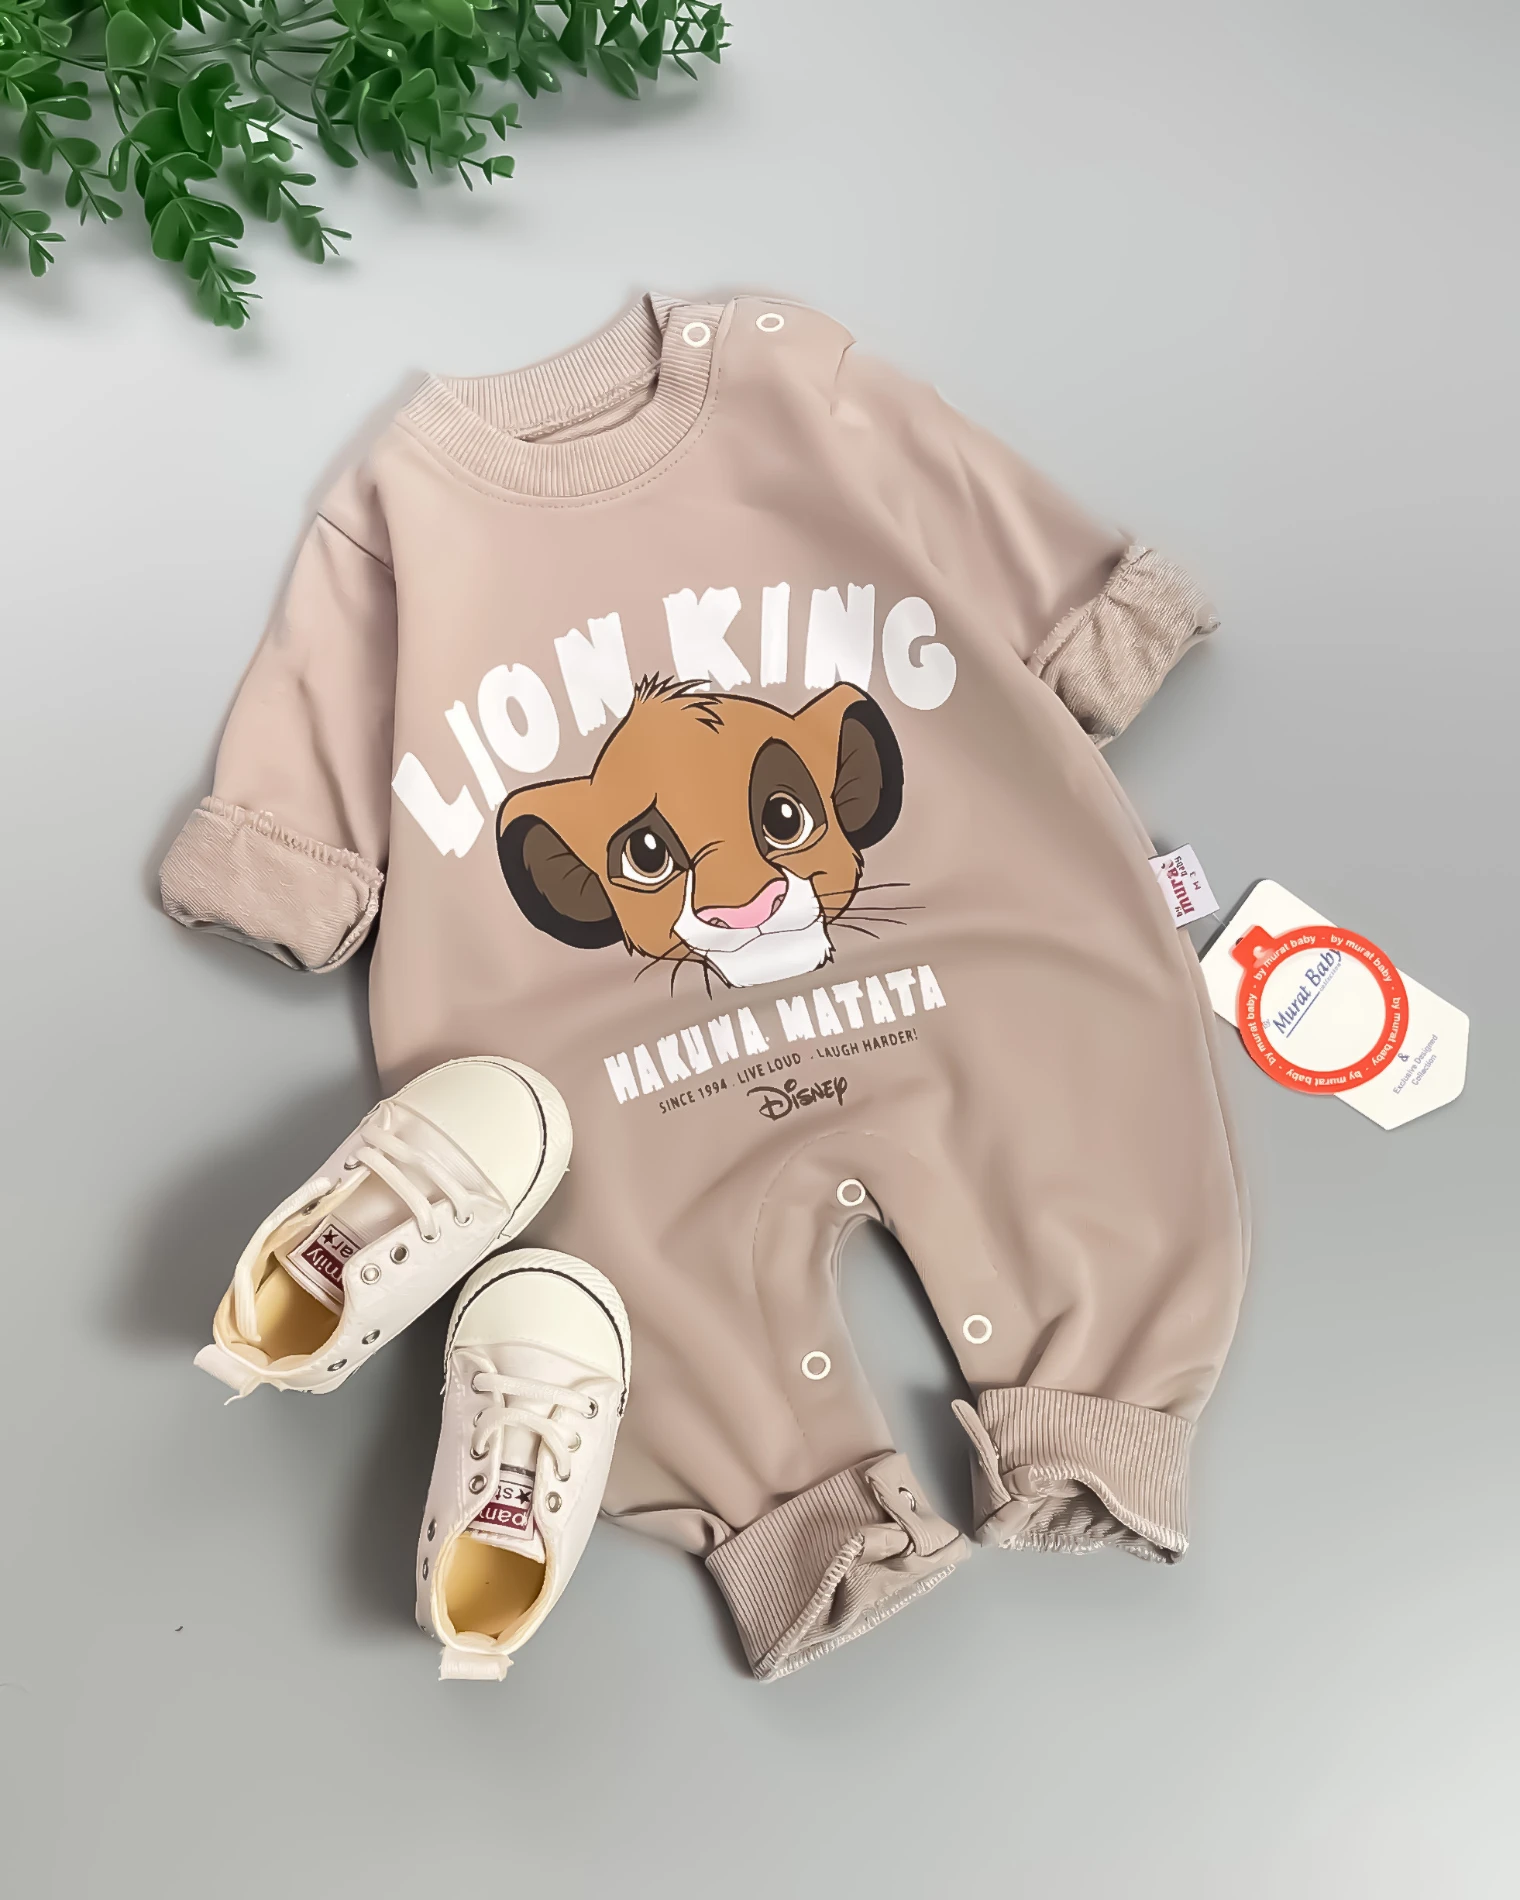 Miniapple Lion King Baskılı Omuzdan ve Alttan Çıtçıtlı Bebek Tulumu - FÜME